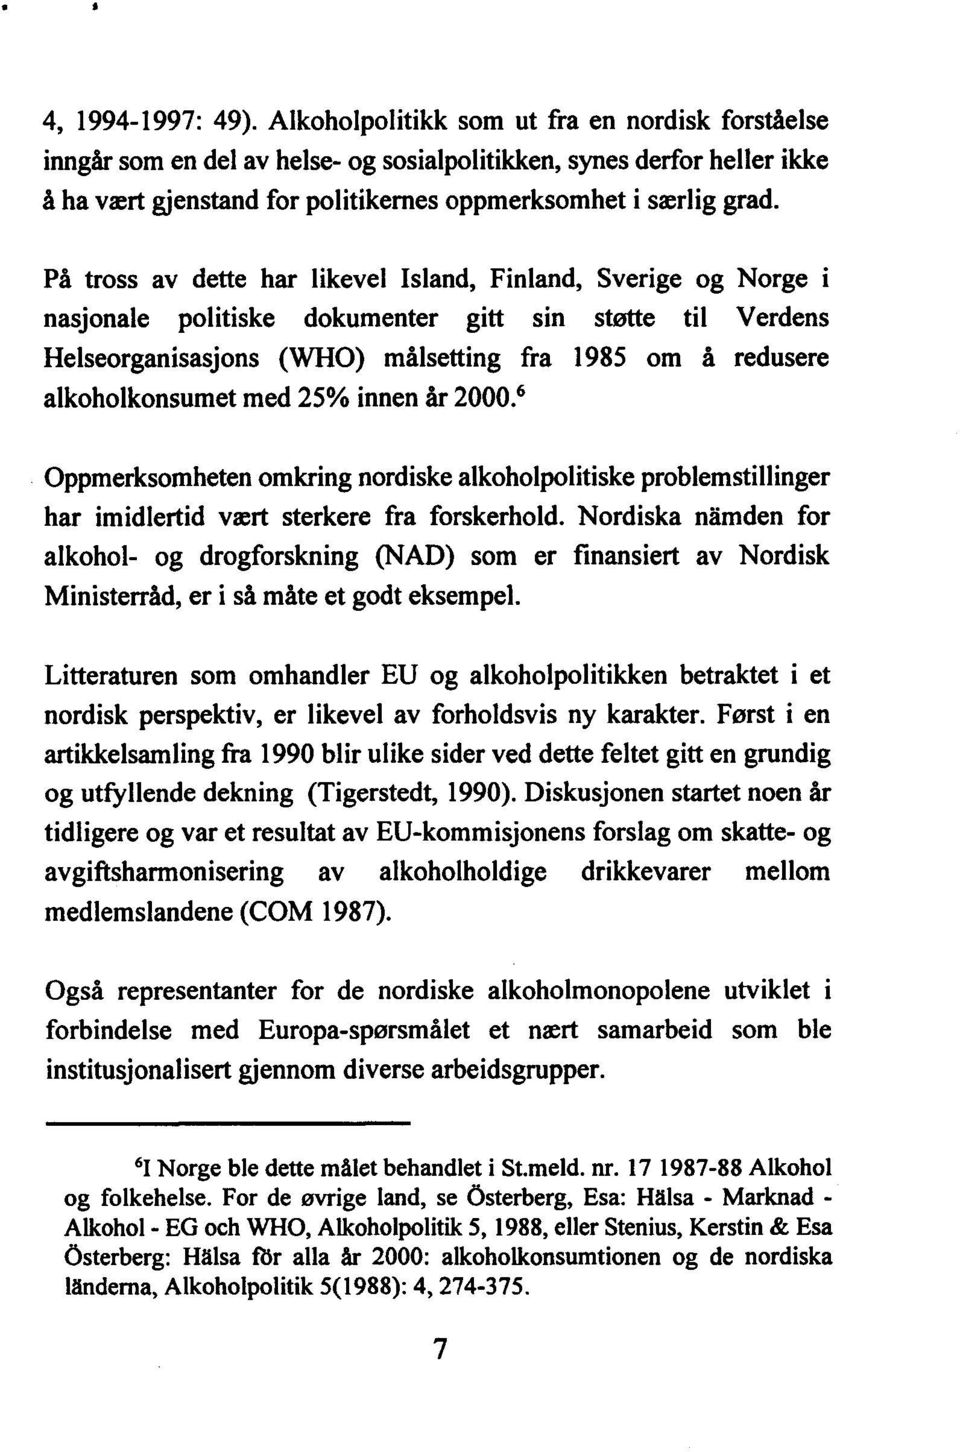 På tross av dette har likevel Island, Finland, Sverige og Norge i nasjonale politiske dokumenter gitt sin støtte til Verdens Helseorganisasjons (WHO) målsetting fra 1985 om å redusere alkoholkonsumet